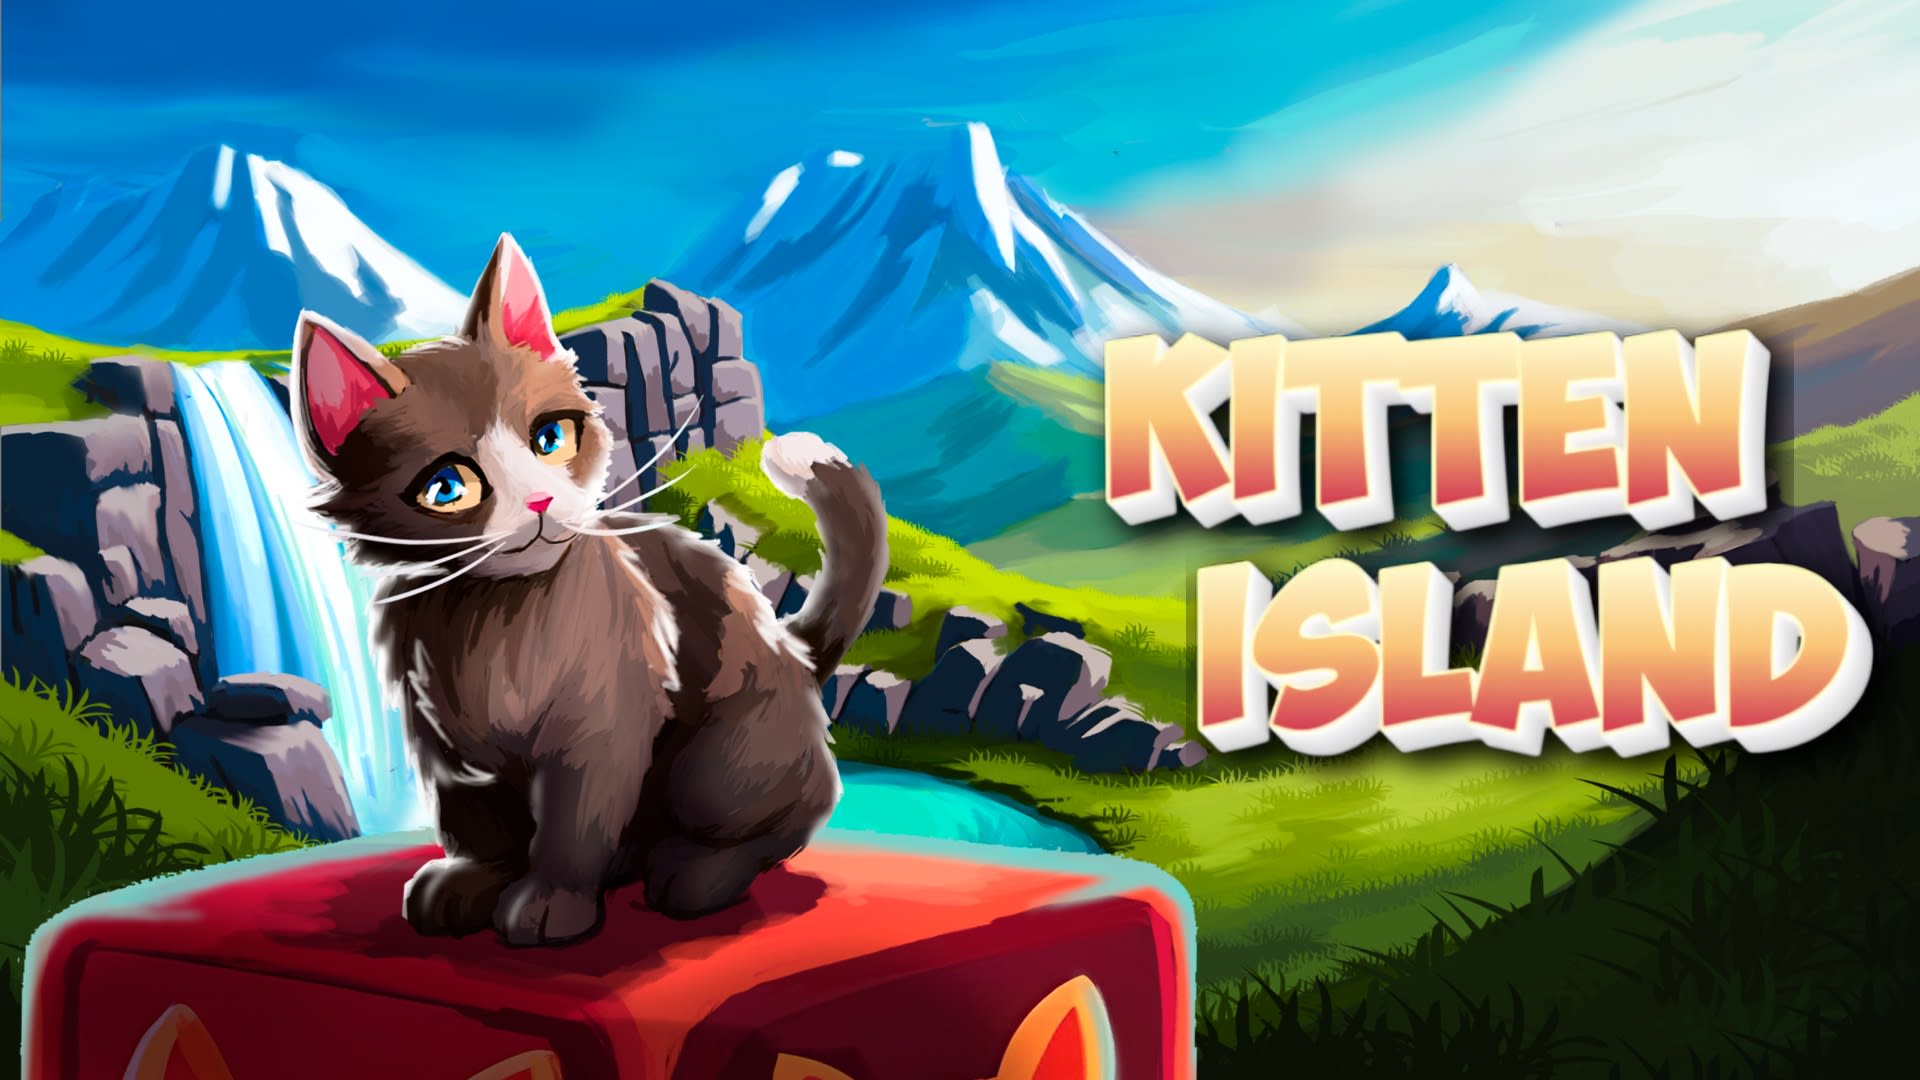 Kitten Island